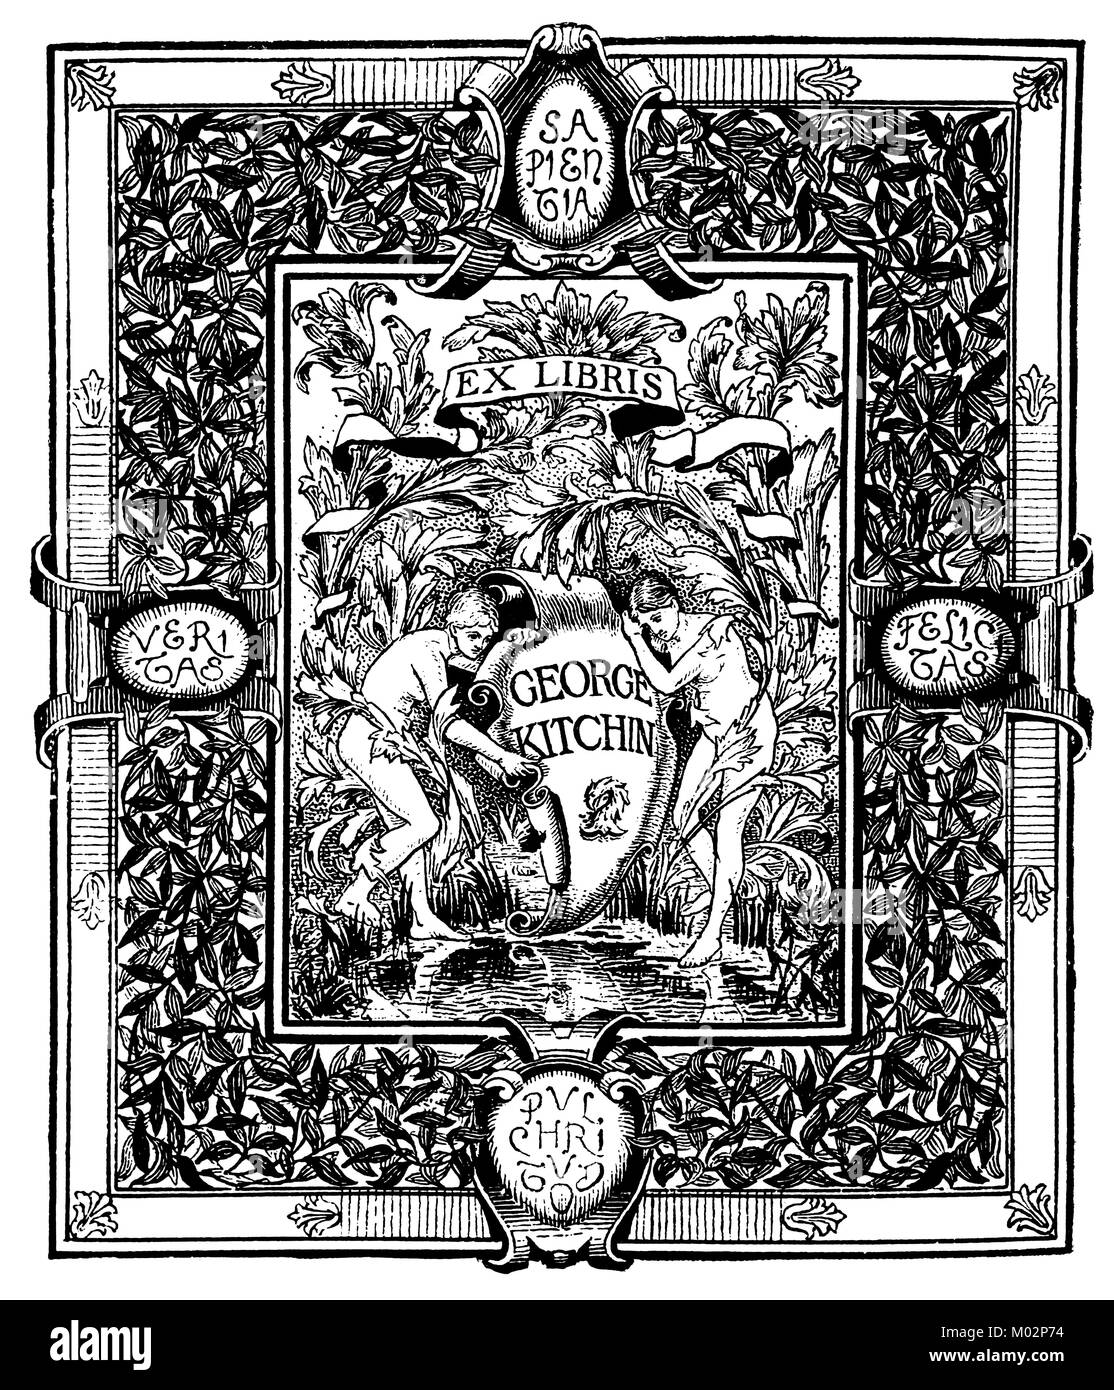 Ex-libris de Geirge Kitchin, 1893 Plaque livre design by artiste Frederick Colin Tilney du Studio Magazine Banque D'Images